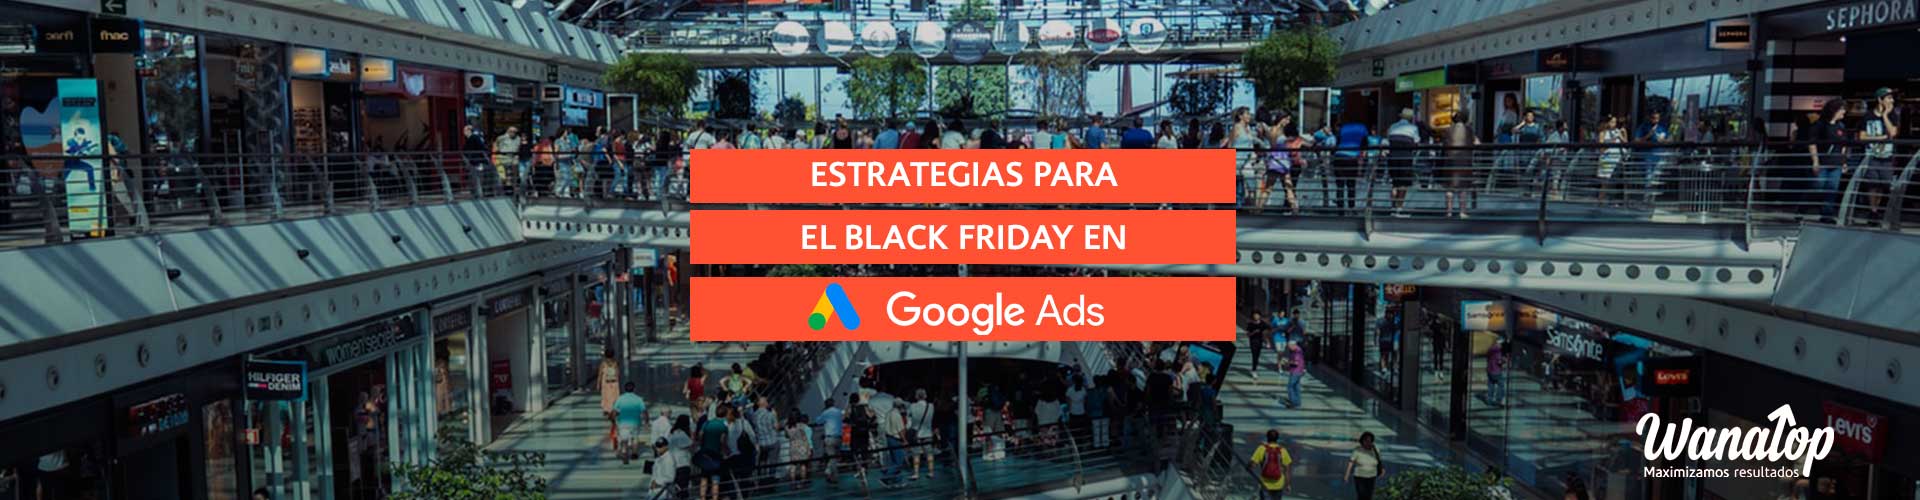 Estrategias para el Black Friday en Google Ads